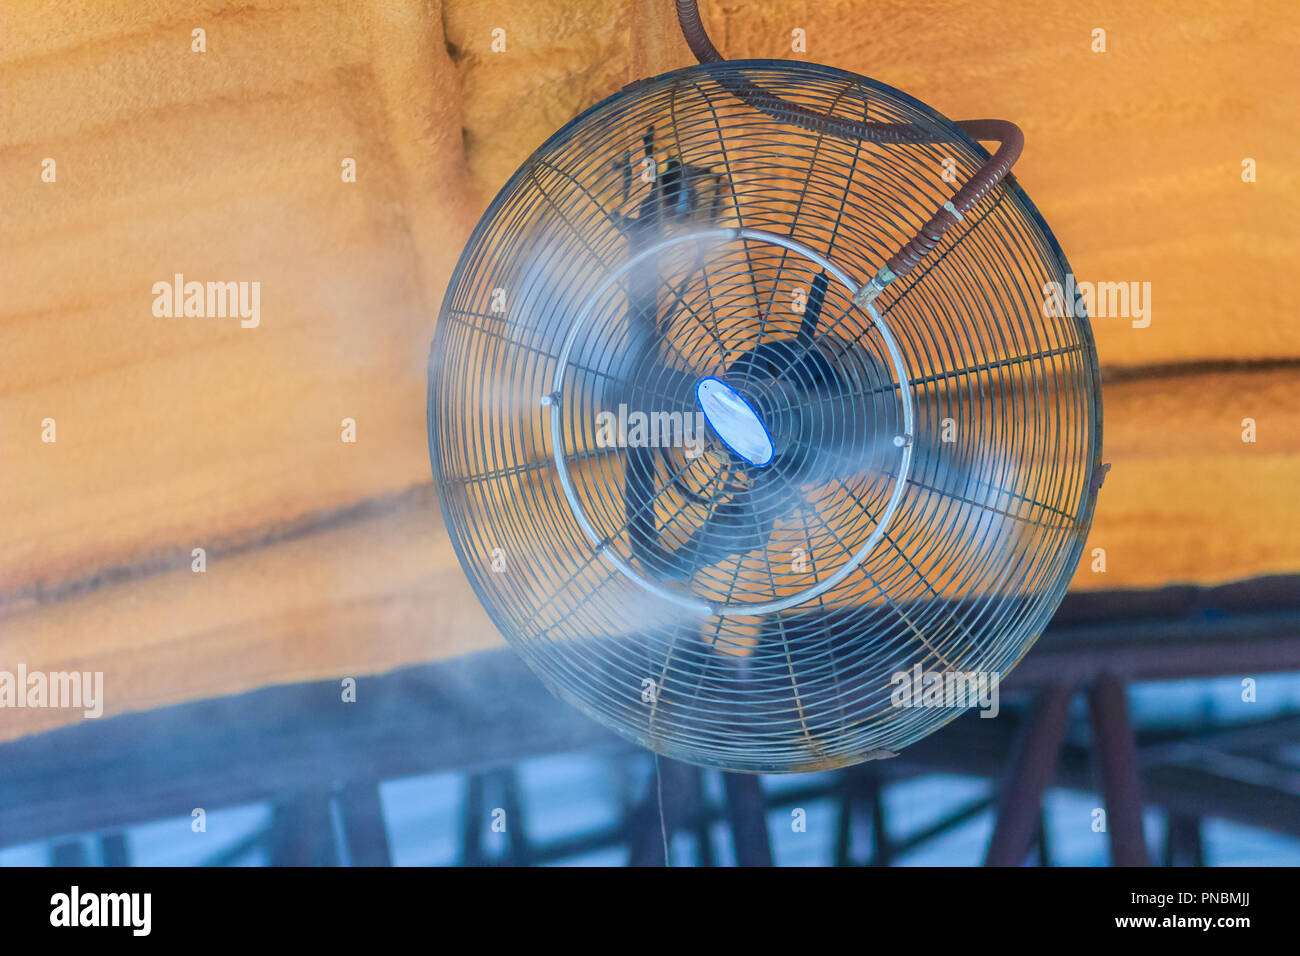 Elektrische Dampf Ventilator an der Decke, Wasser mister Lüfter bläst Wasser  in die Luft kühl, die den Bereich außerhalb an einem heißen Sommertag  abzukühlen Stockfotografie - Alamy